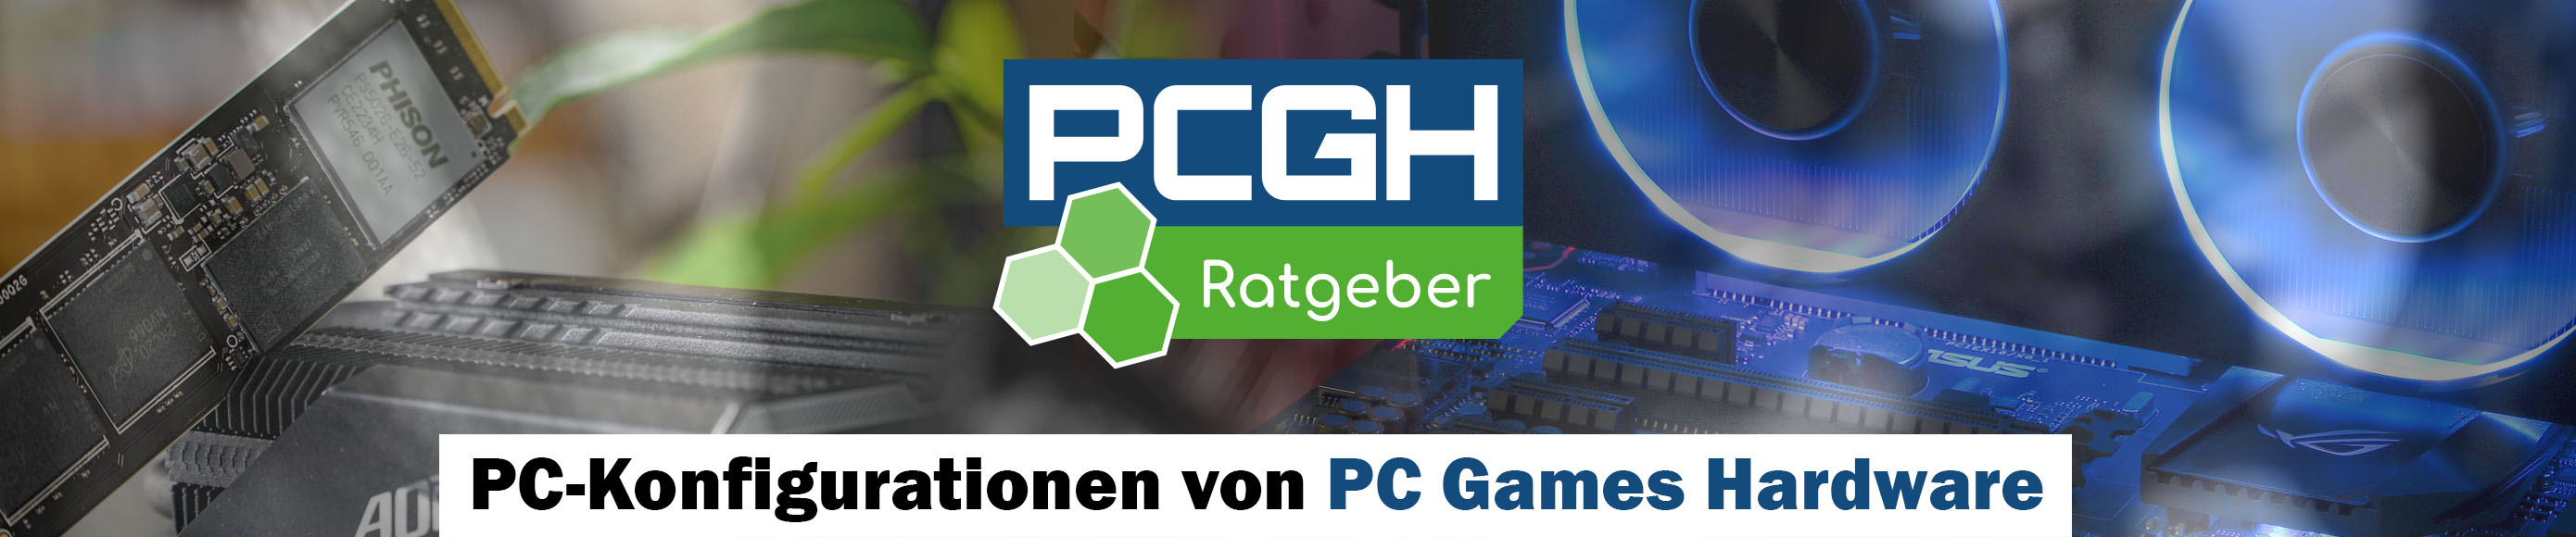 PCGH-Ratgeber PC Empfehlungen